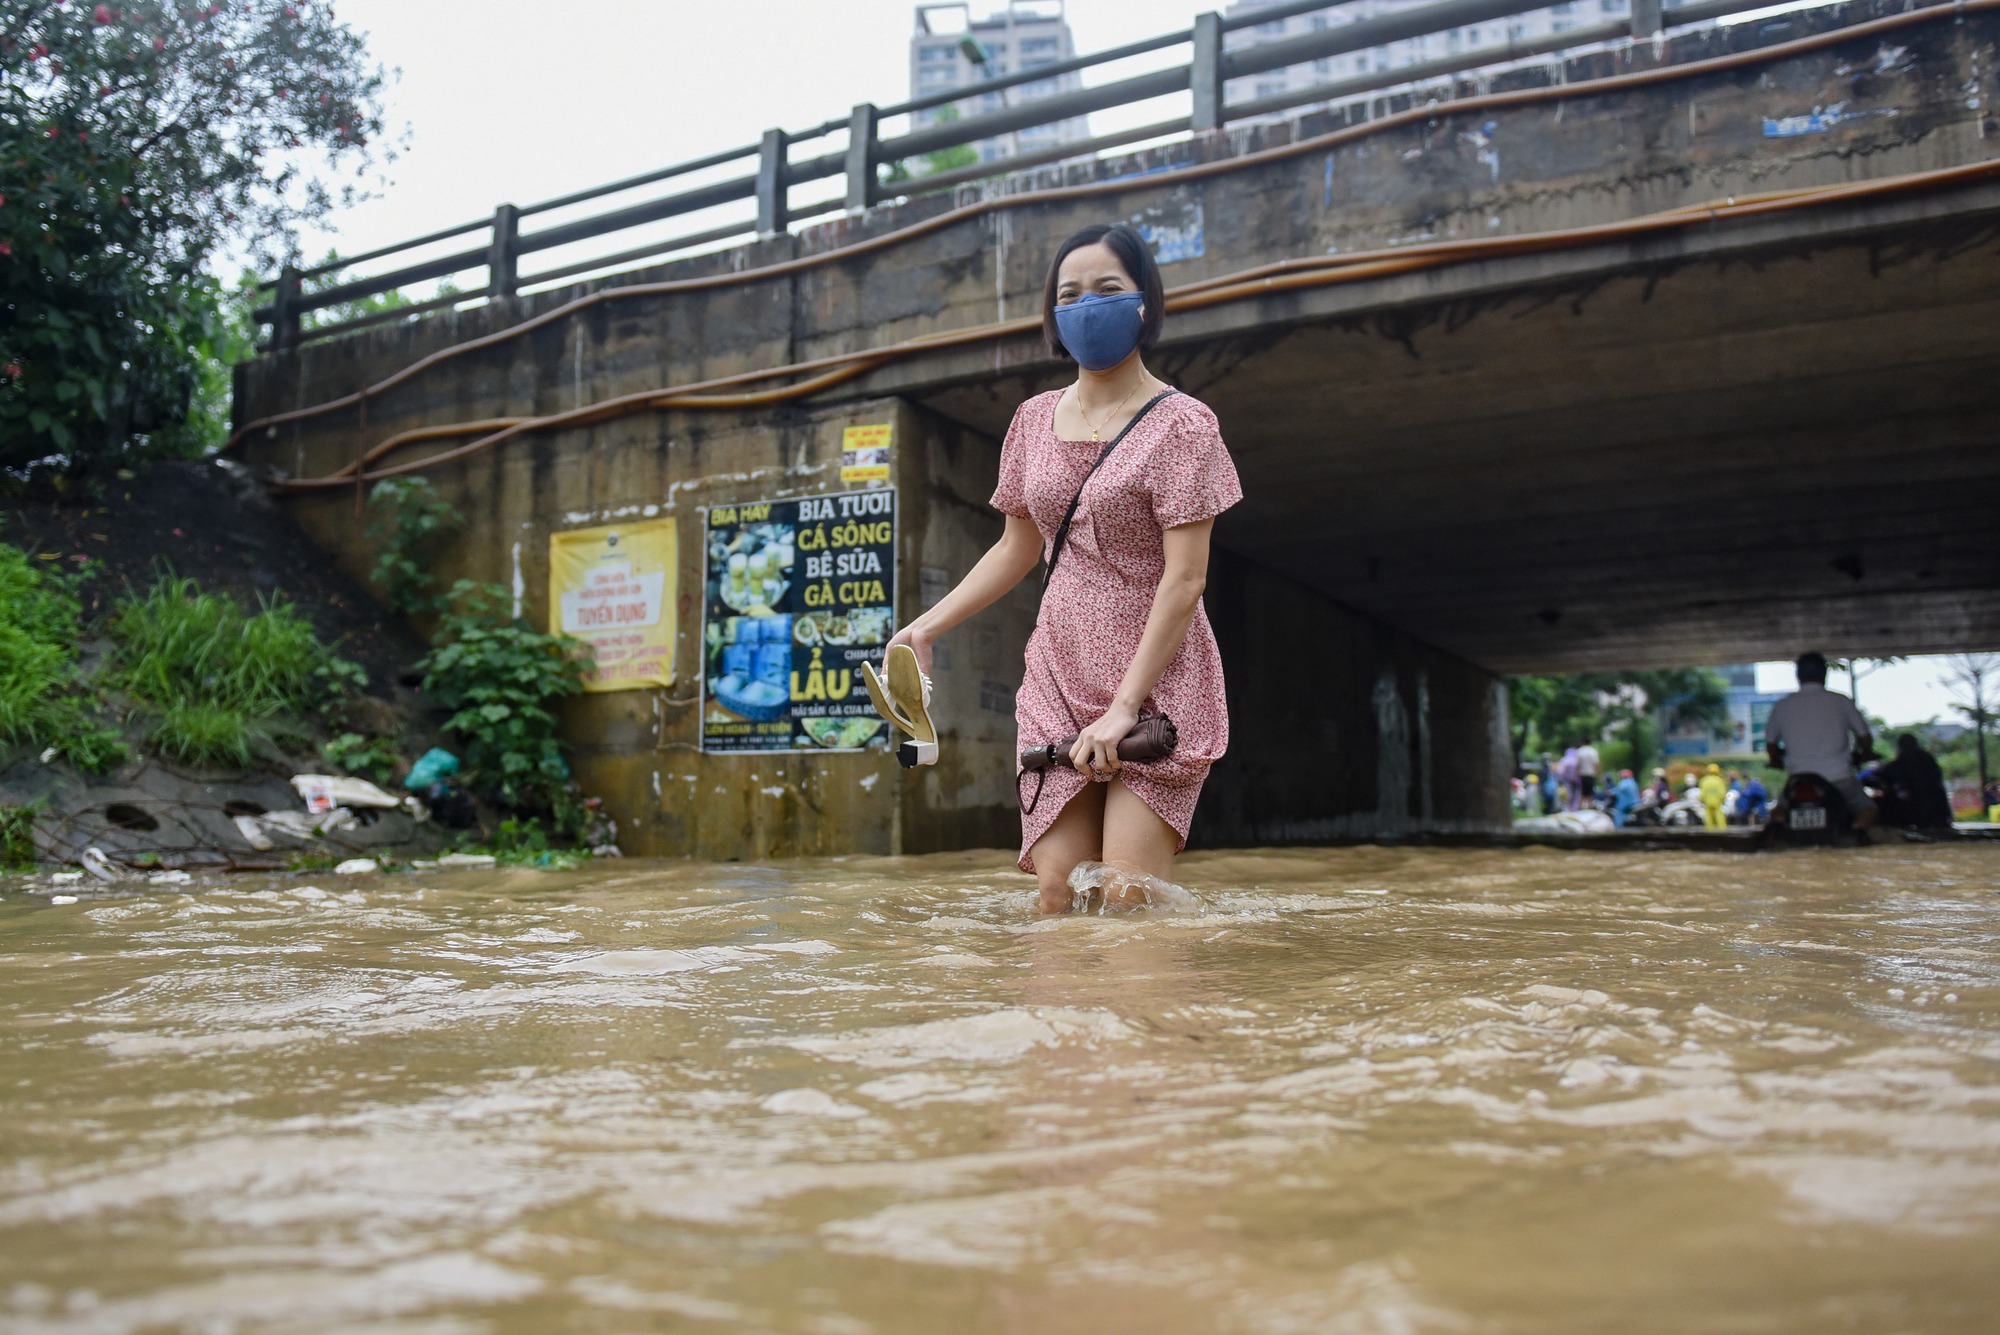 Đường gom đại lộ Thăng Long chìm trong biển nước sau trận mưa lớn - Ảnh 5.